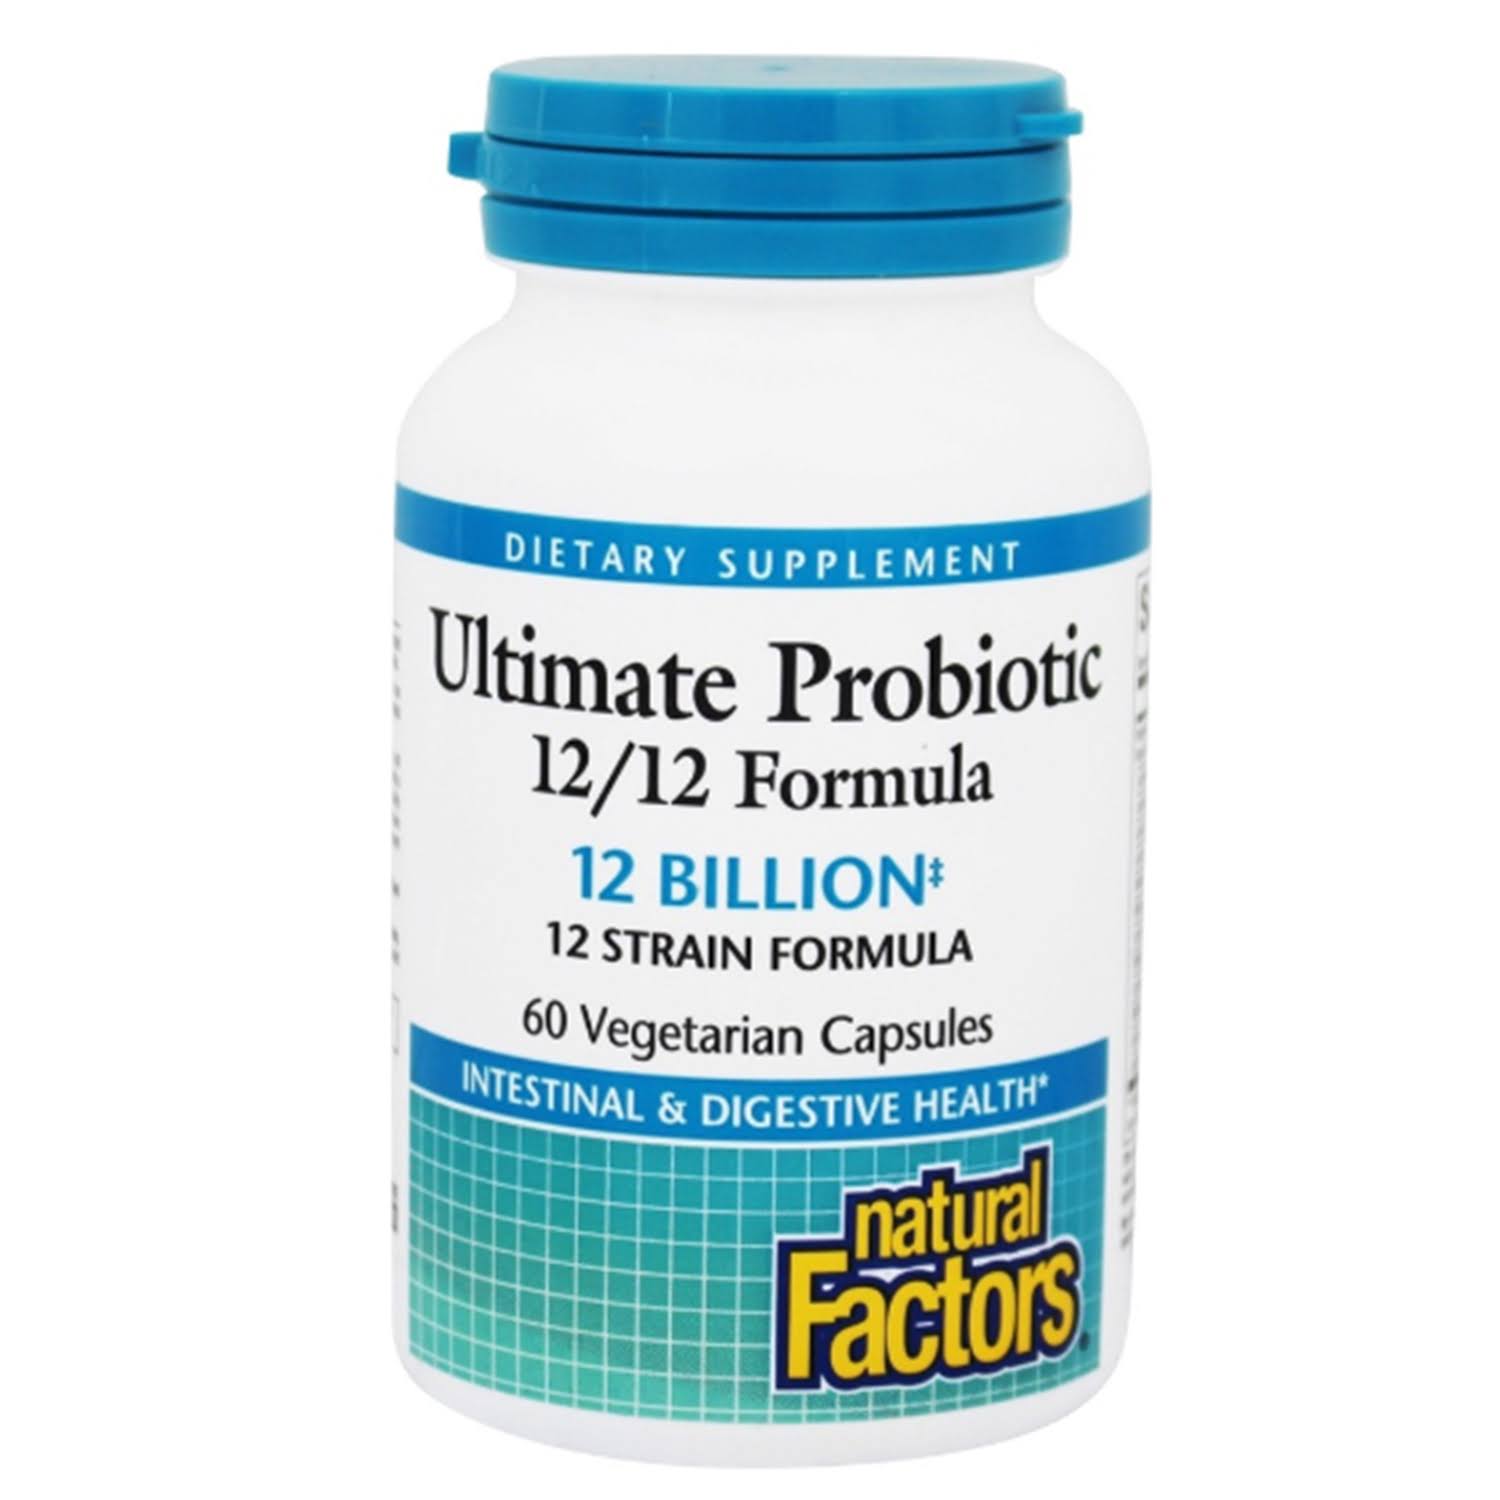 Natural Factors Ultimate Probiotic 12/12 Formula Capsules - 60 Count